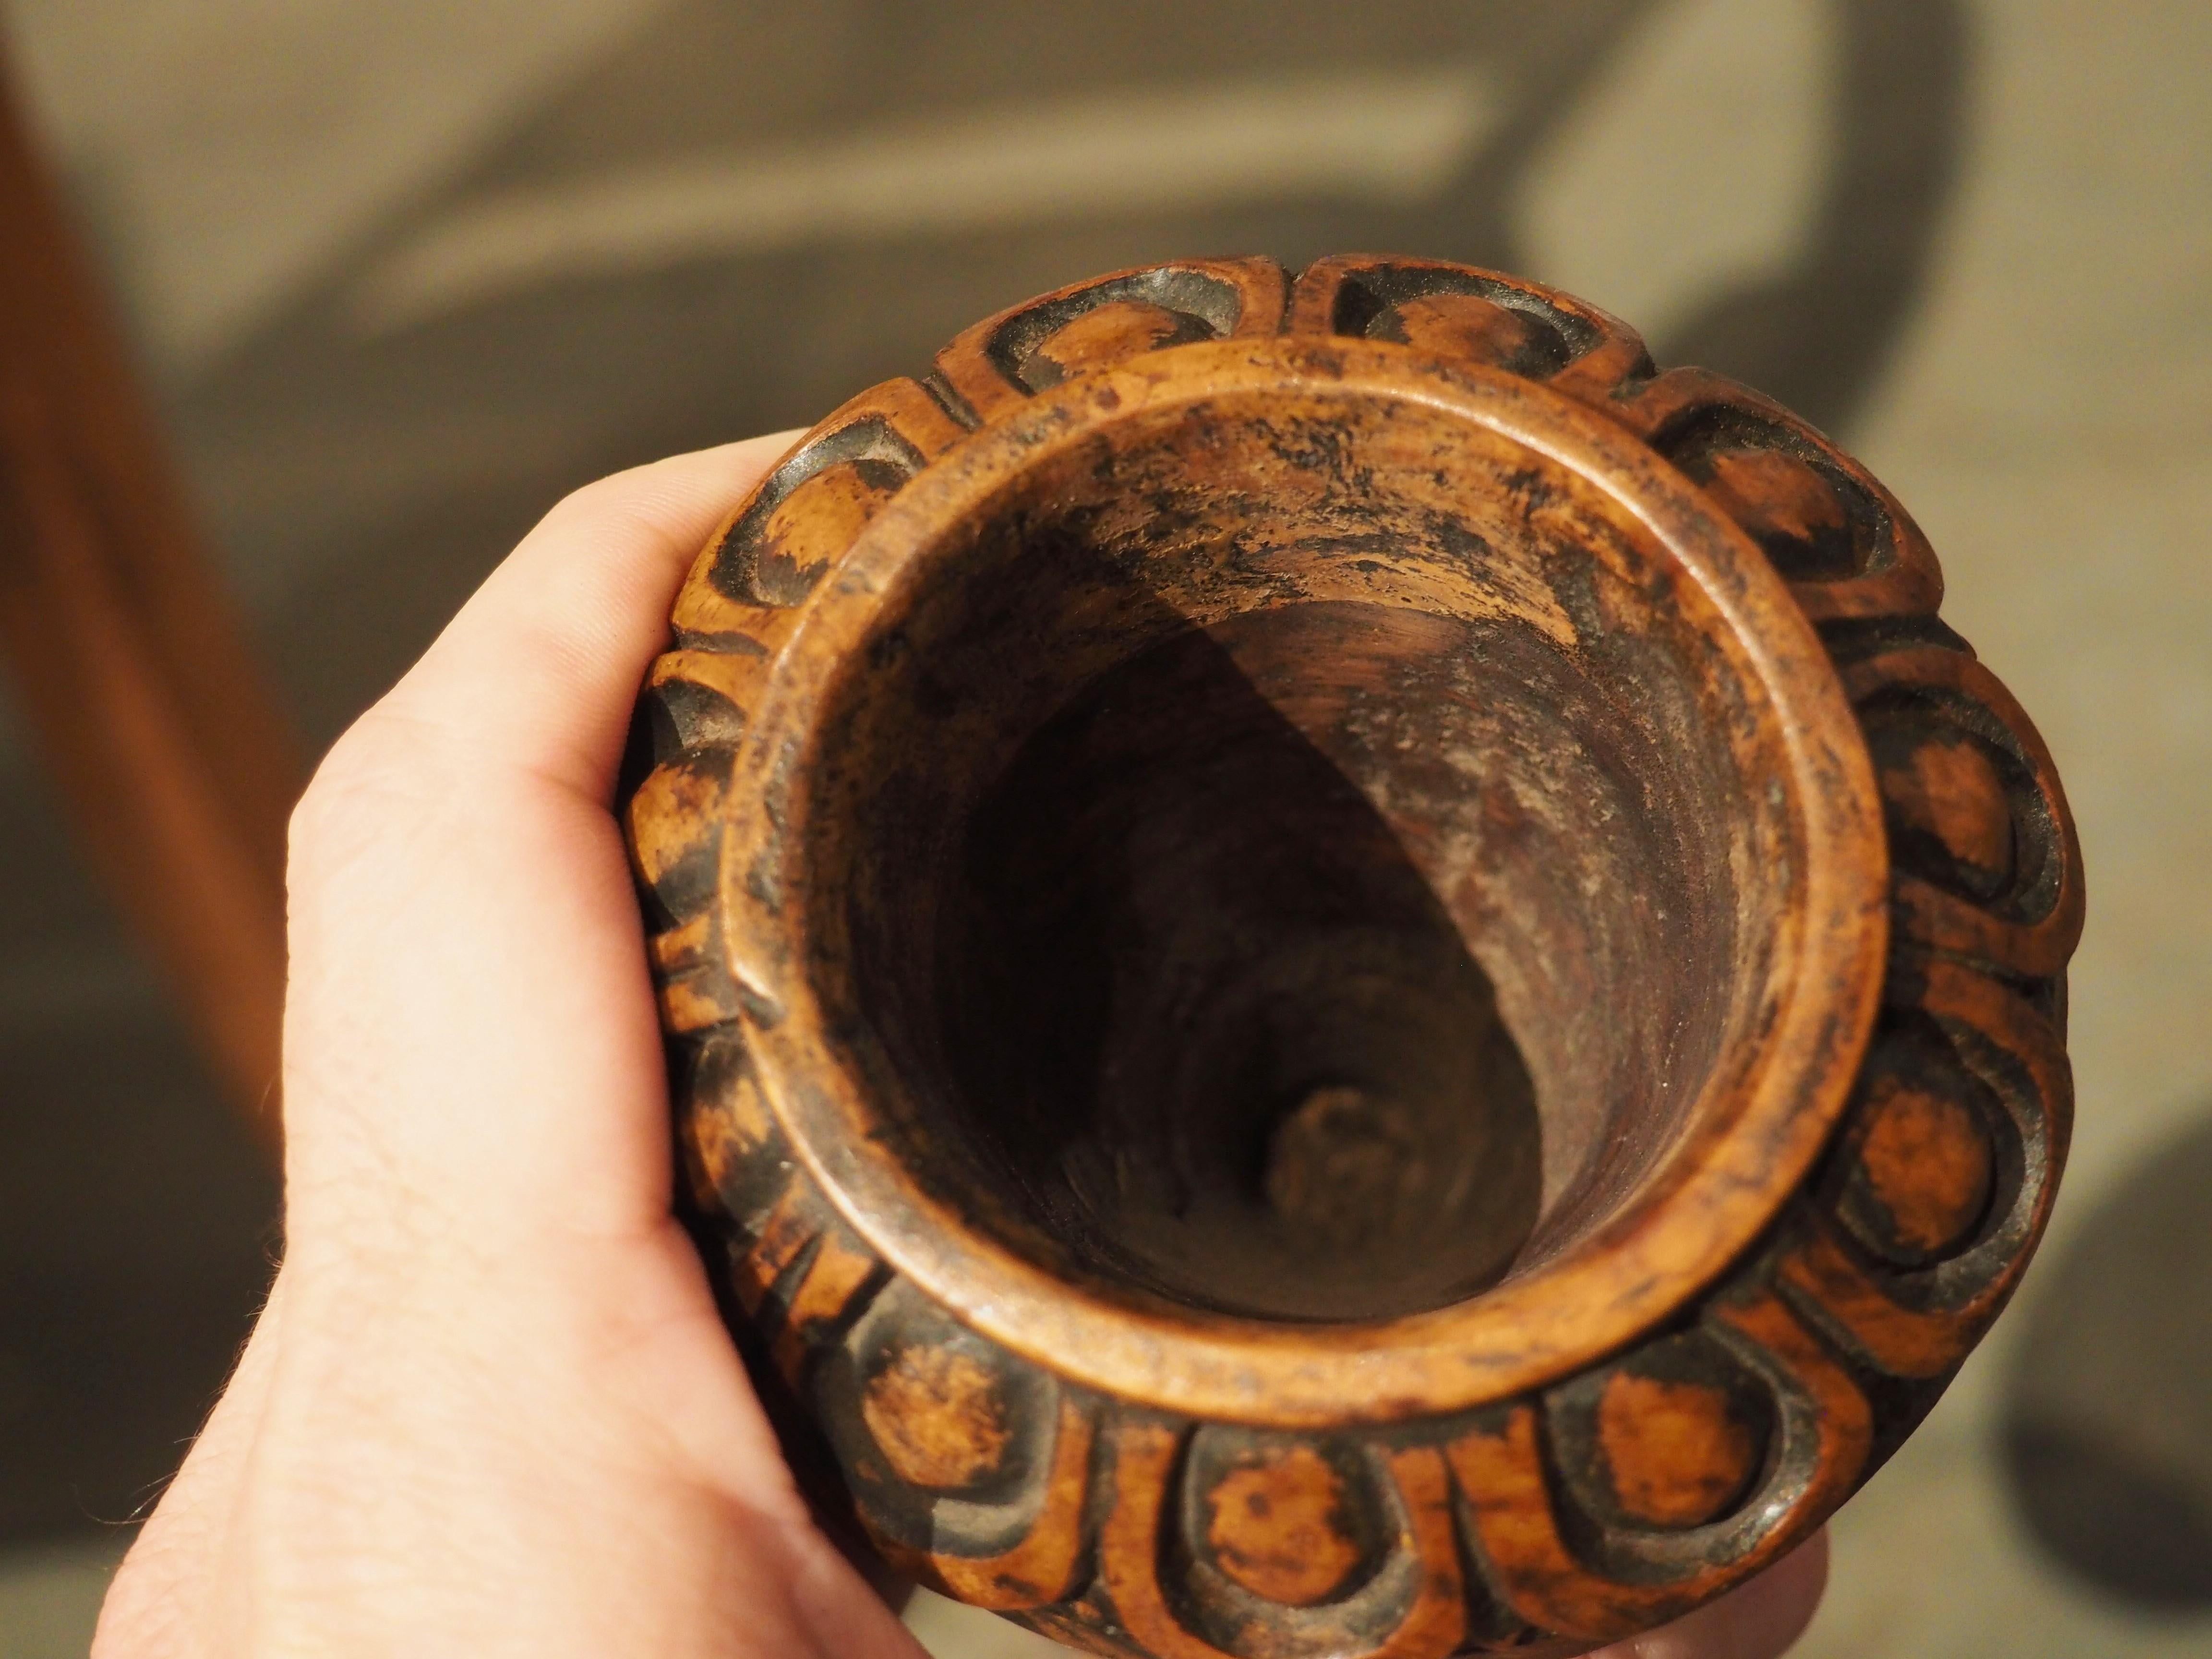 Diese hübschen, um 1820 in England handgeschnitzten Vasen wurden aus Wurzelholz angefertigt. Die Vasen haben eine enorme, nachgedunkelte Patina entwickelt, vor allem entlang der geschnitzten Motive, wie z. B. dem Ei-und-Pfeil-Rand und der konkaven